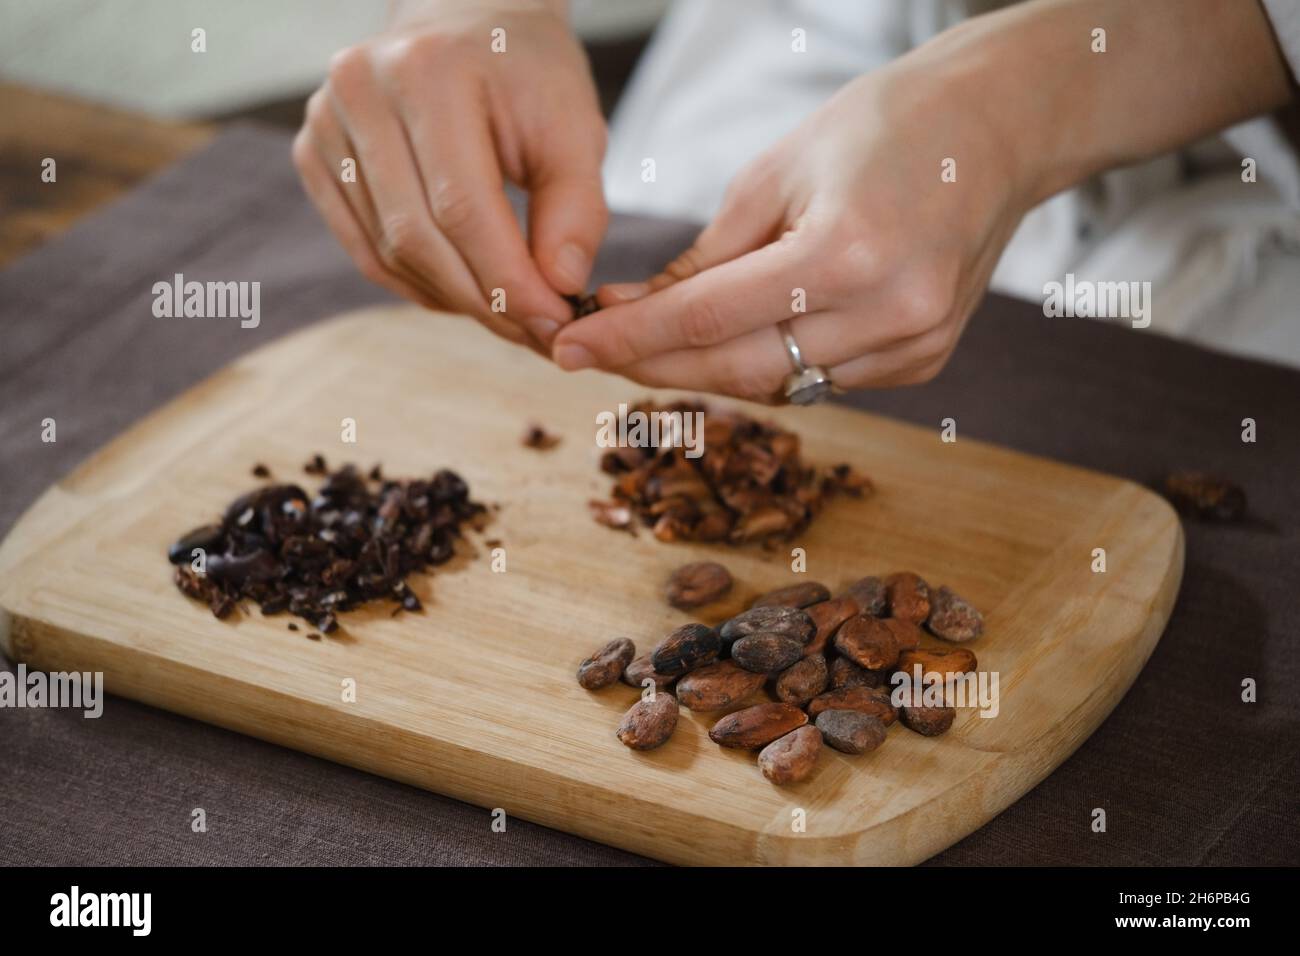 Les mains épluchant des haricots cacao bio sur une table en bois, des pointes de cacao, la fabrication artisanale de chocolat dans un style rustique pour la cérémonie sur la table.Dégustation Banque D'Images